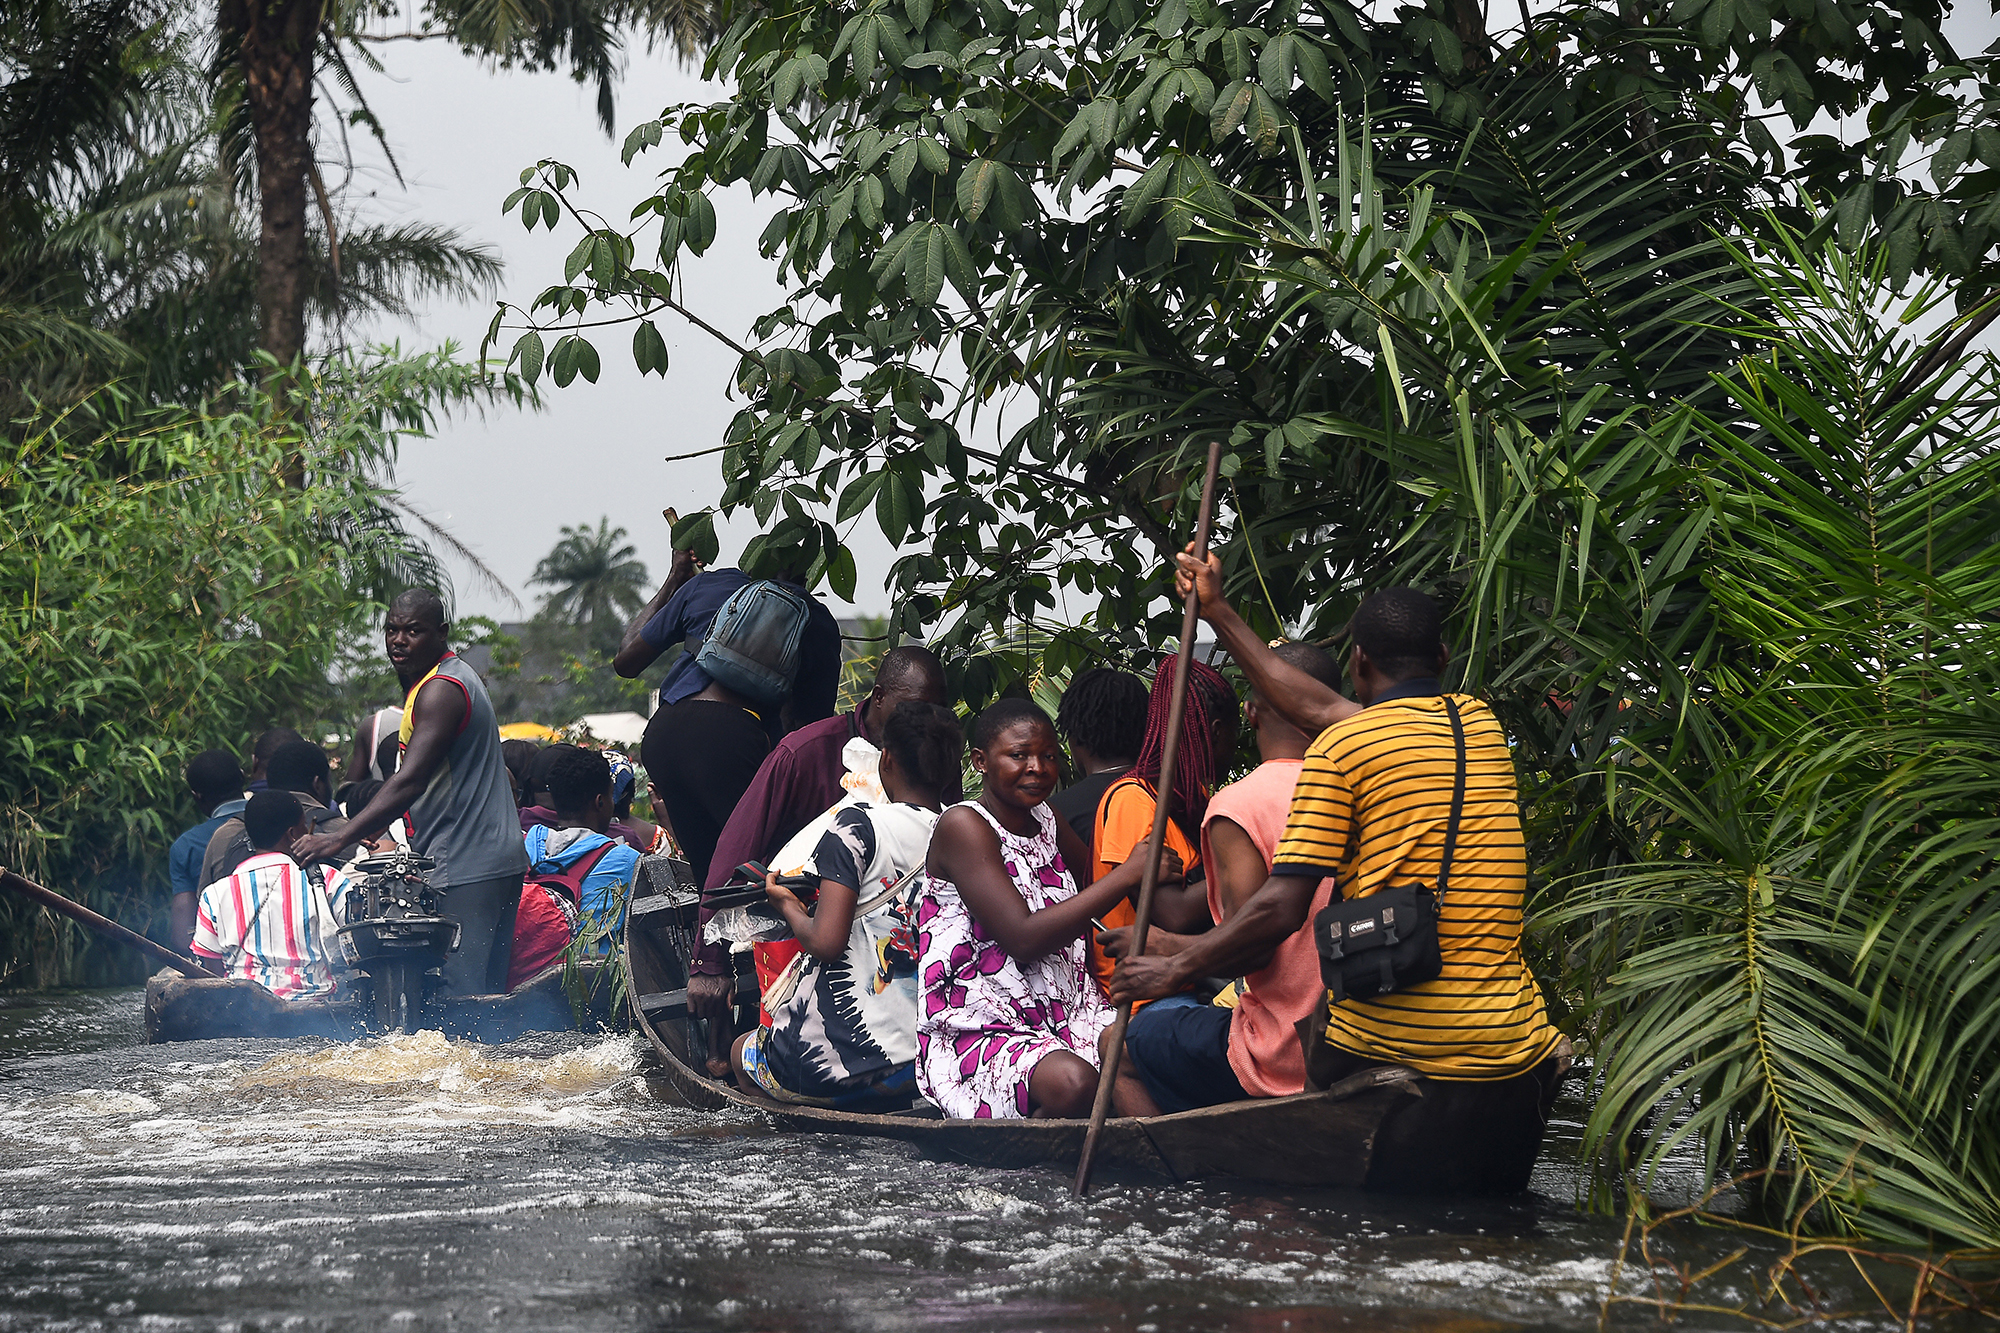 Überschwemmungen in Nigeria